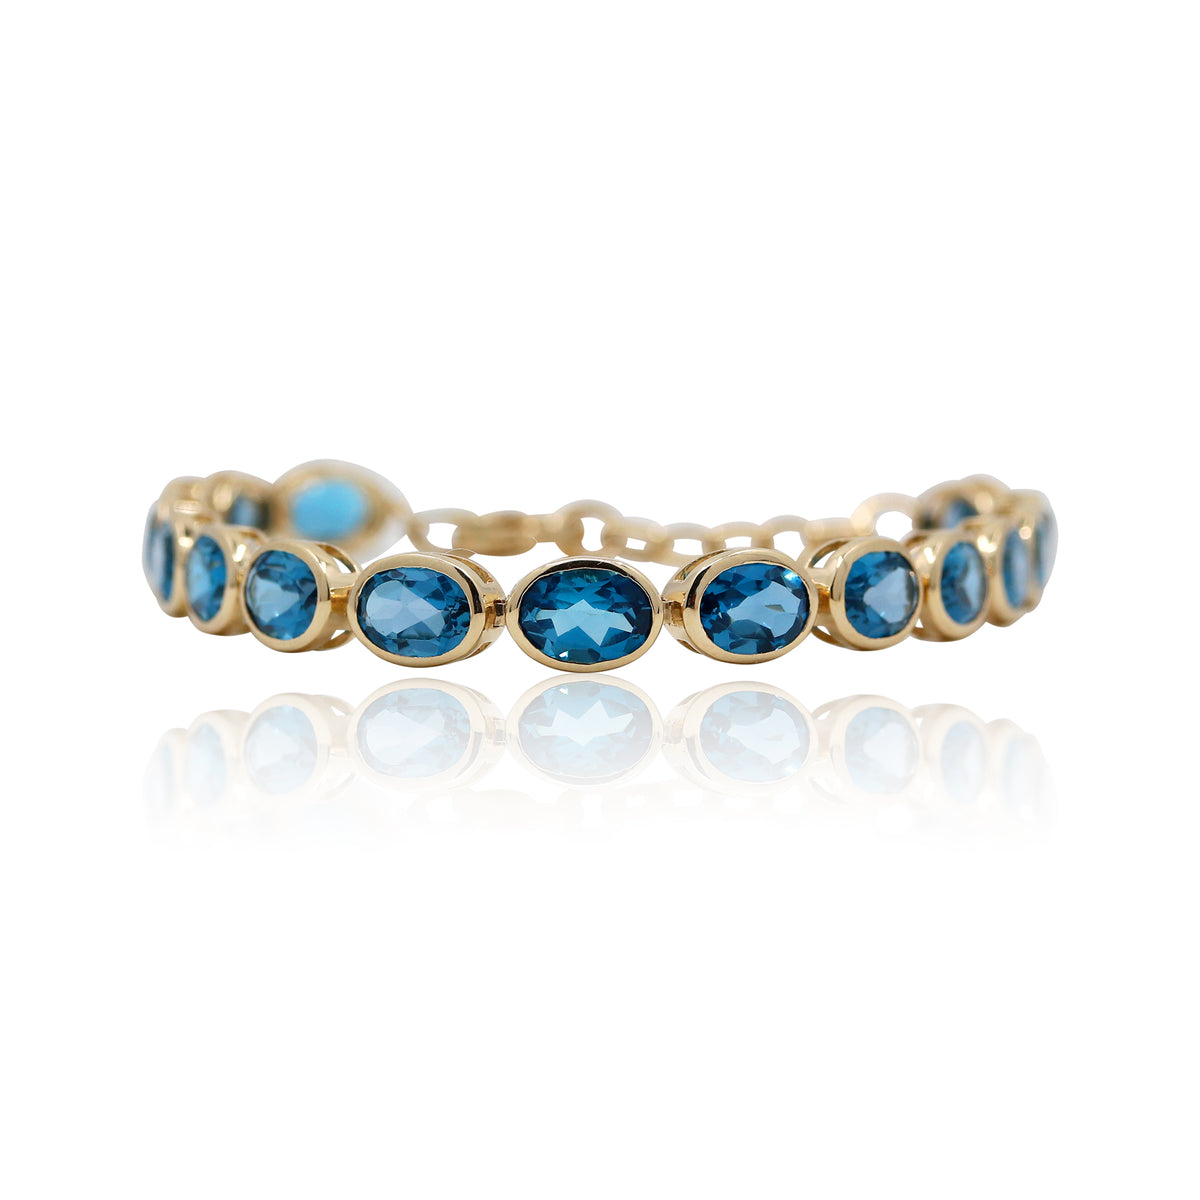 London Blue Topaz Bracelet